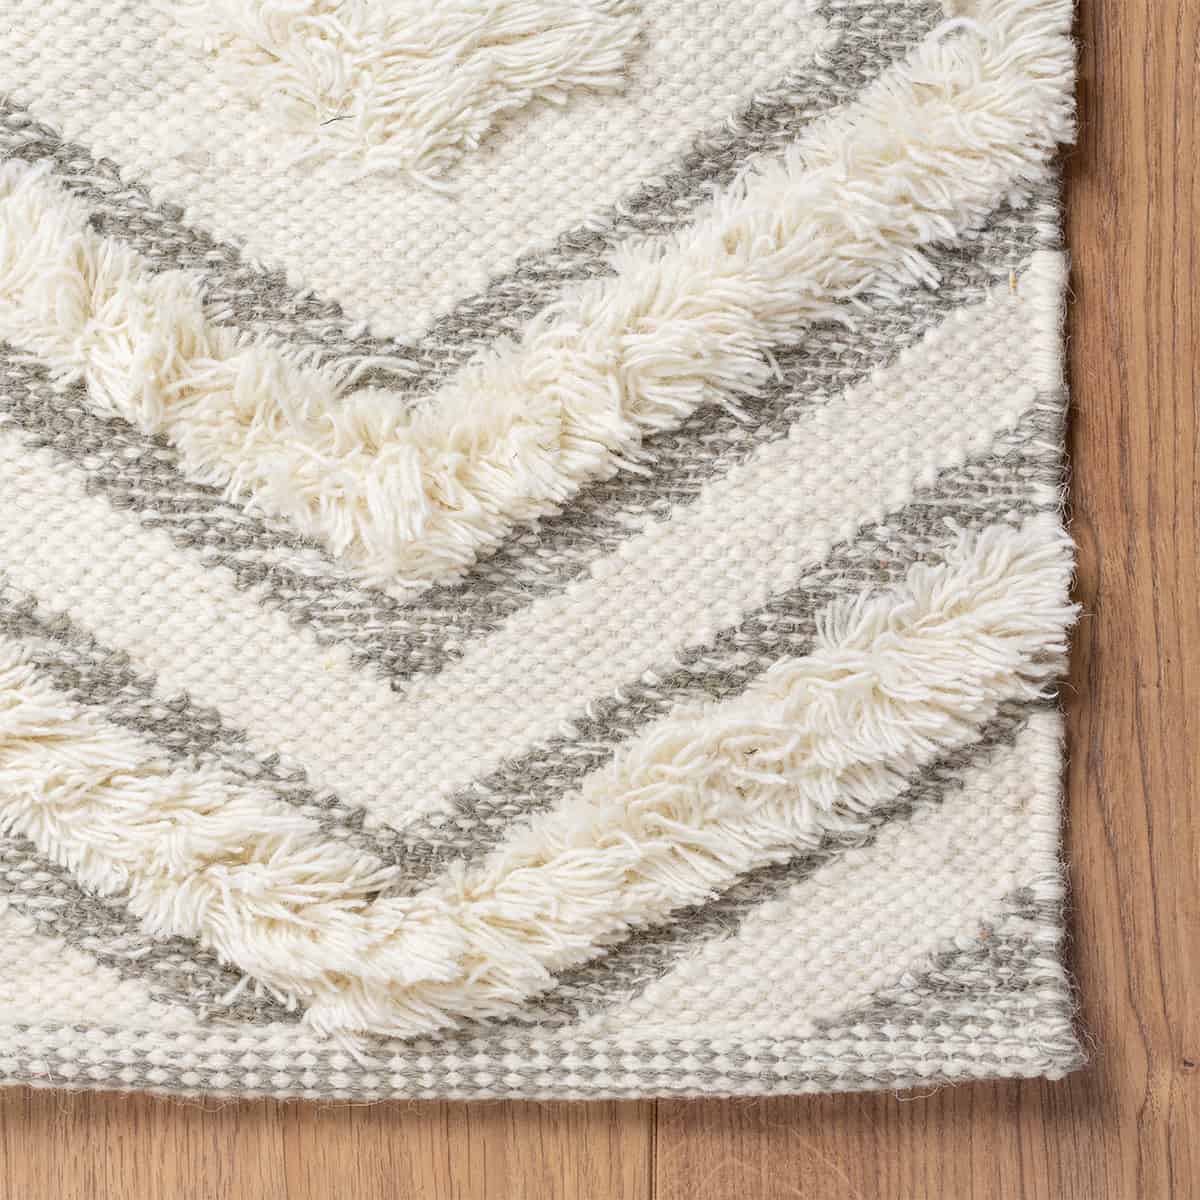 שטיח קילים סקנדינבי 30 אפור/לבן ראנר | השטיח האדום